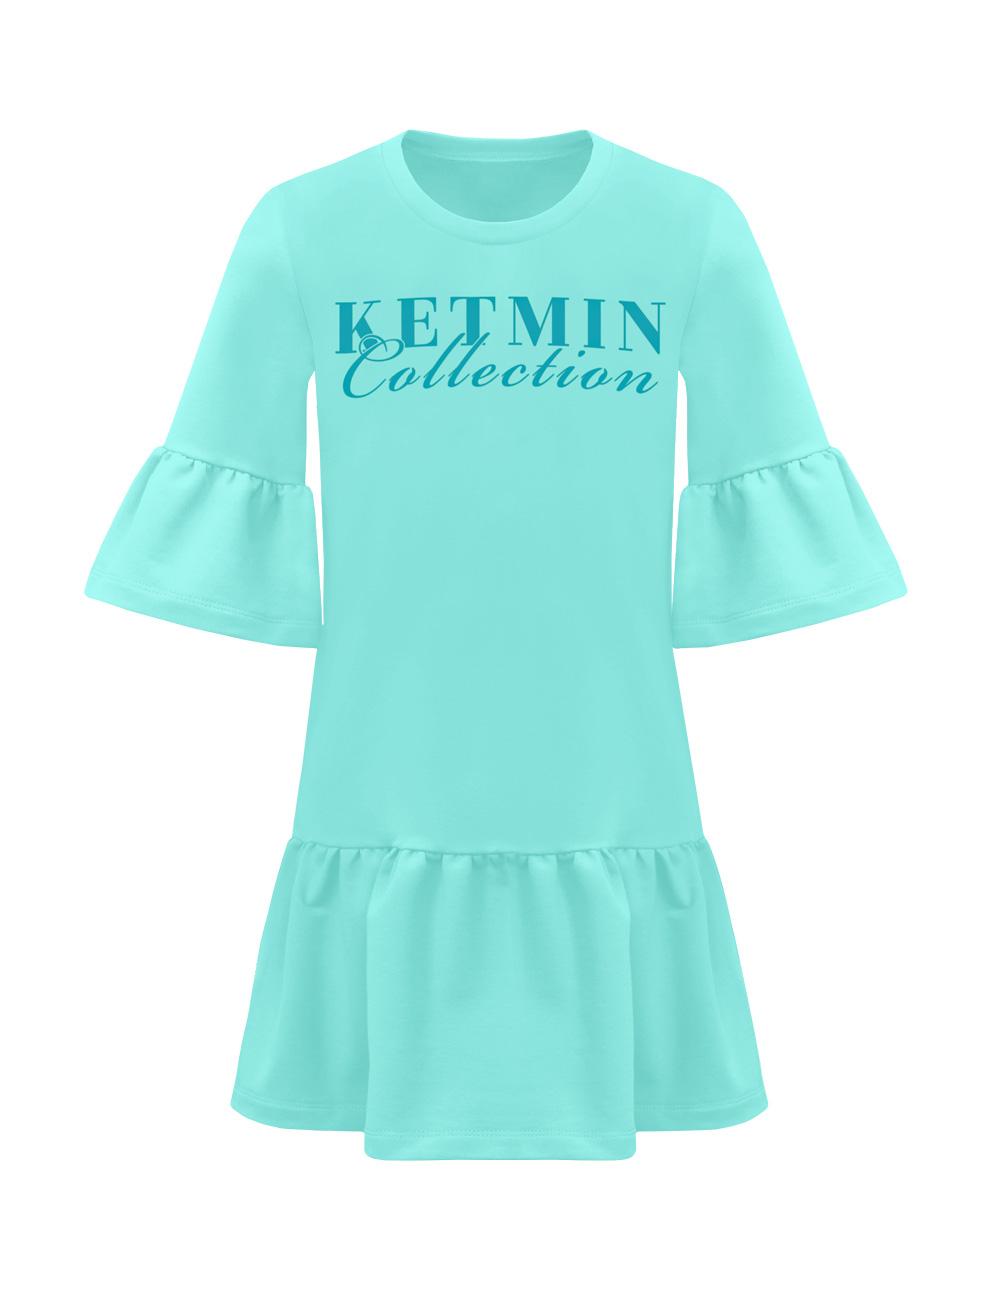 Платье для девочки KETMIN Collection цв.Мята